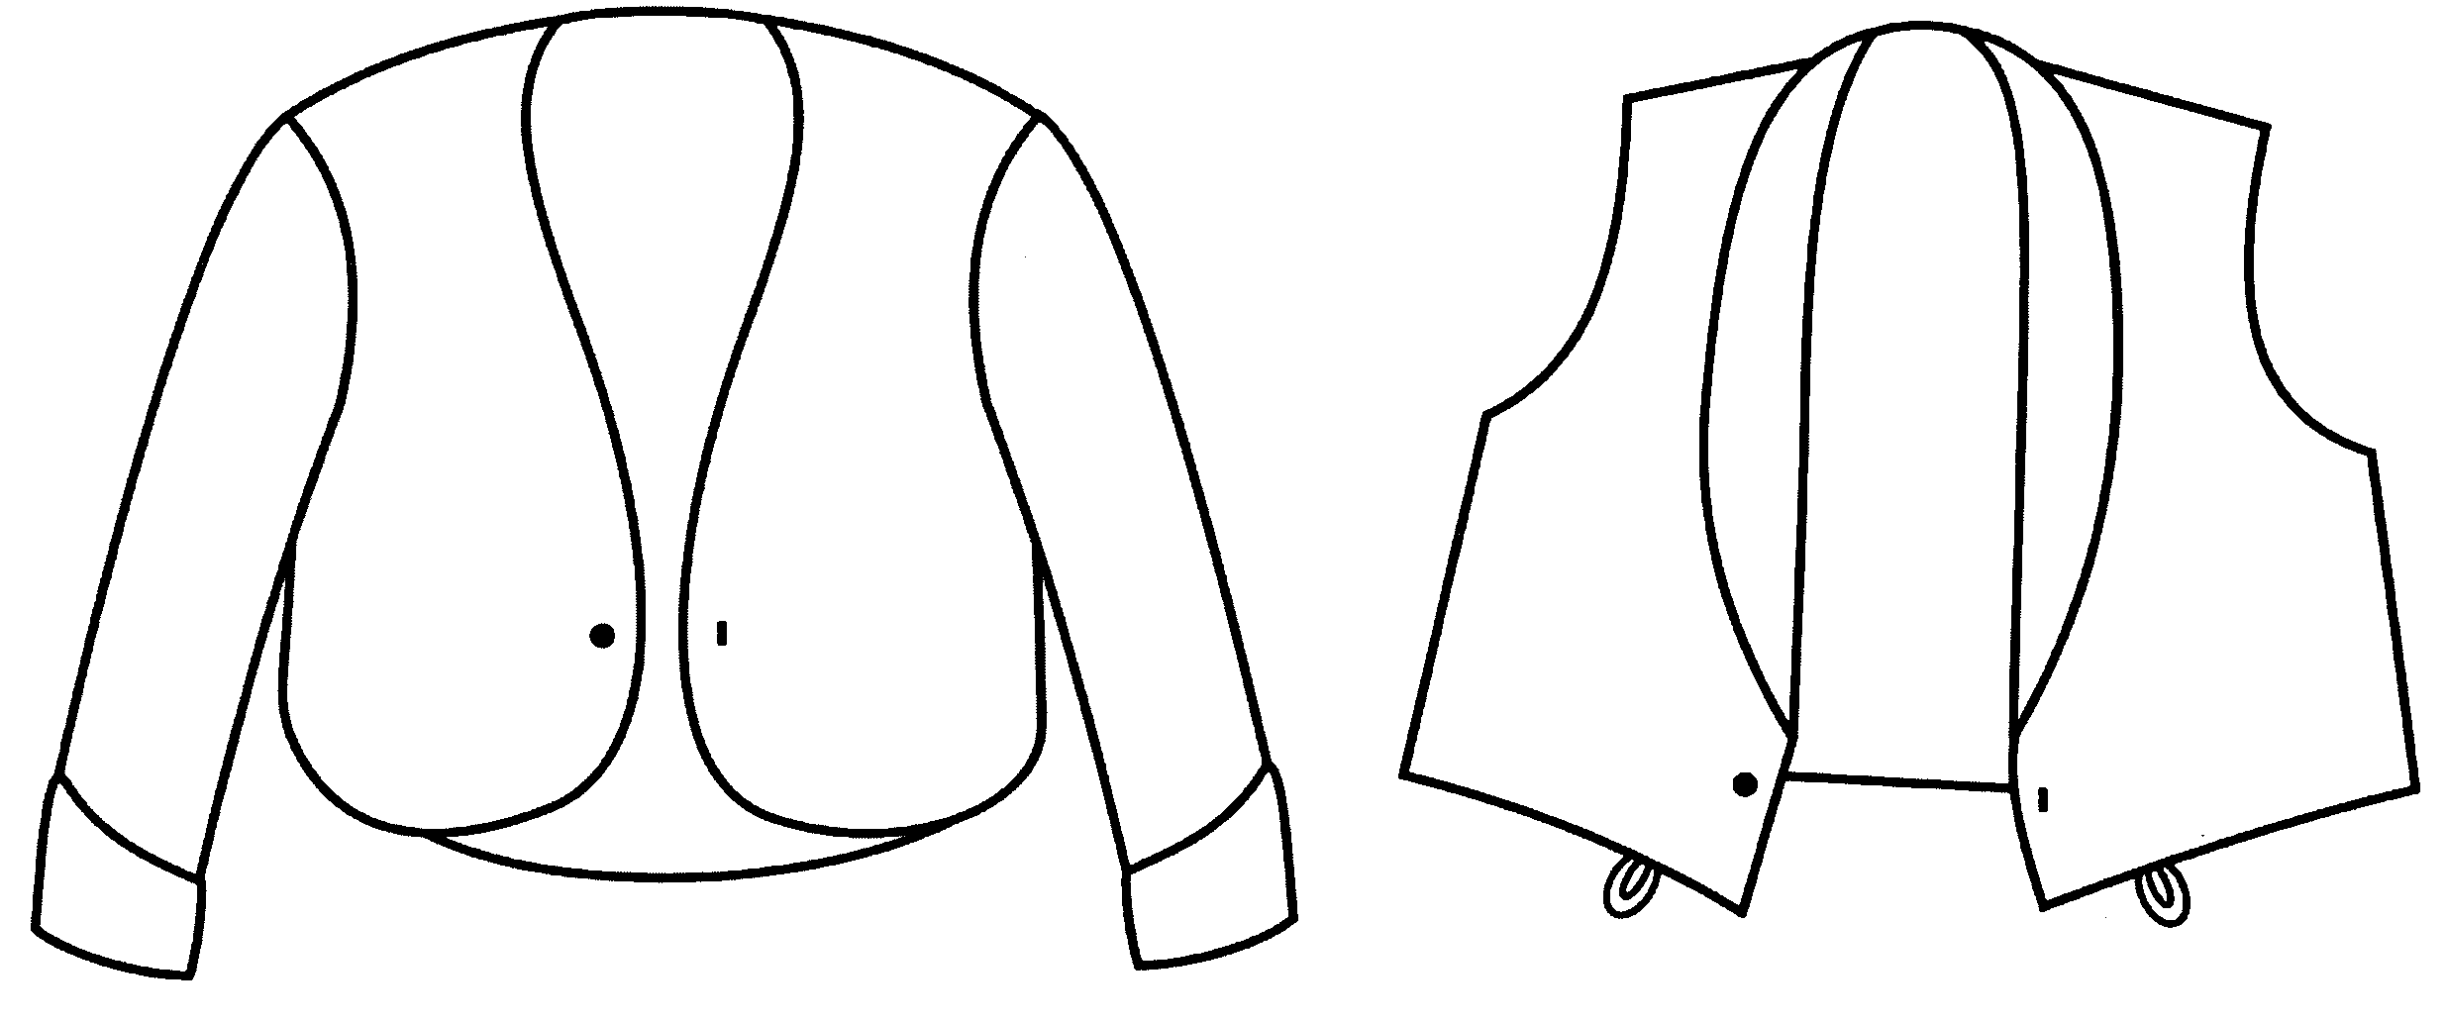 Mariachi Suit patent image